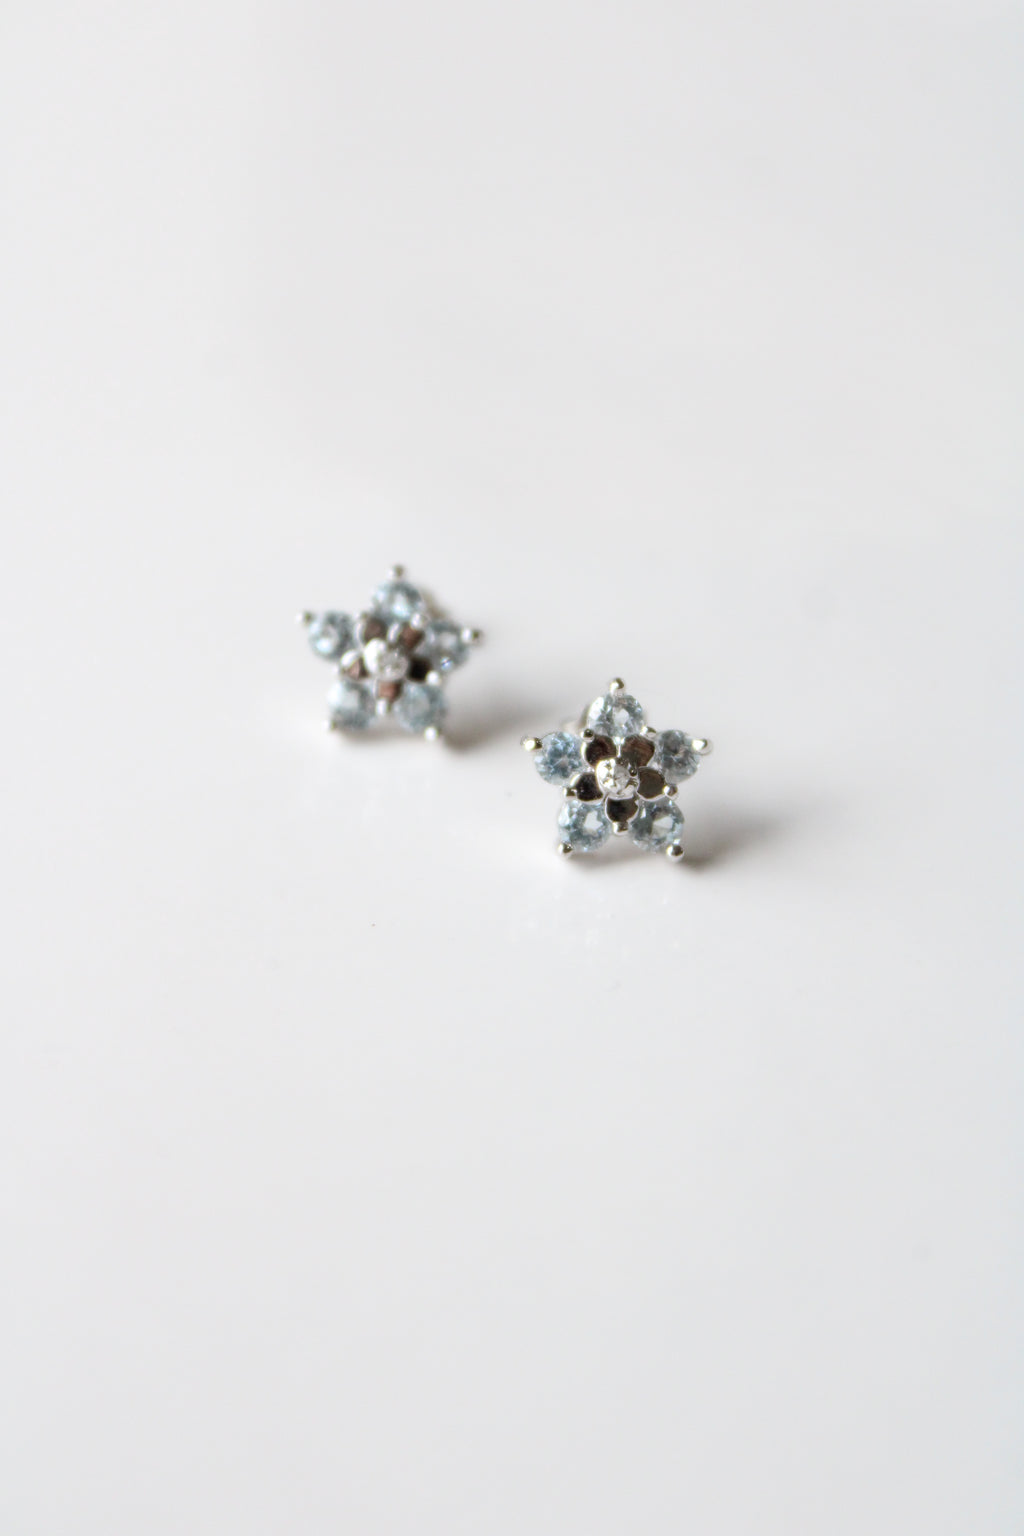 Blue Topaz Flower Sterling Silver Stud Earrings